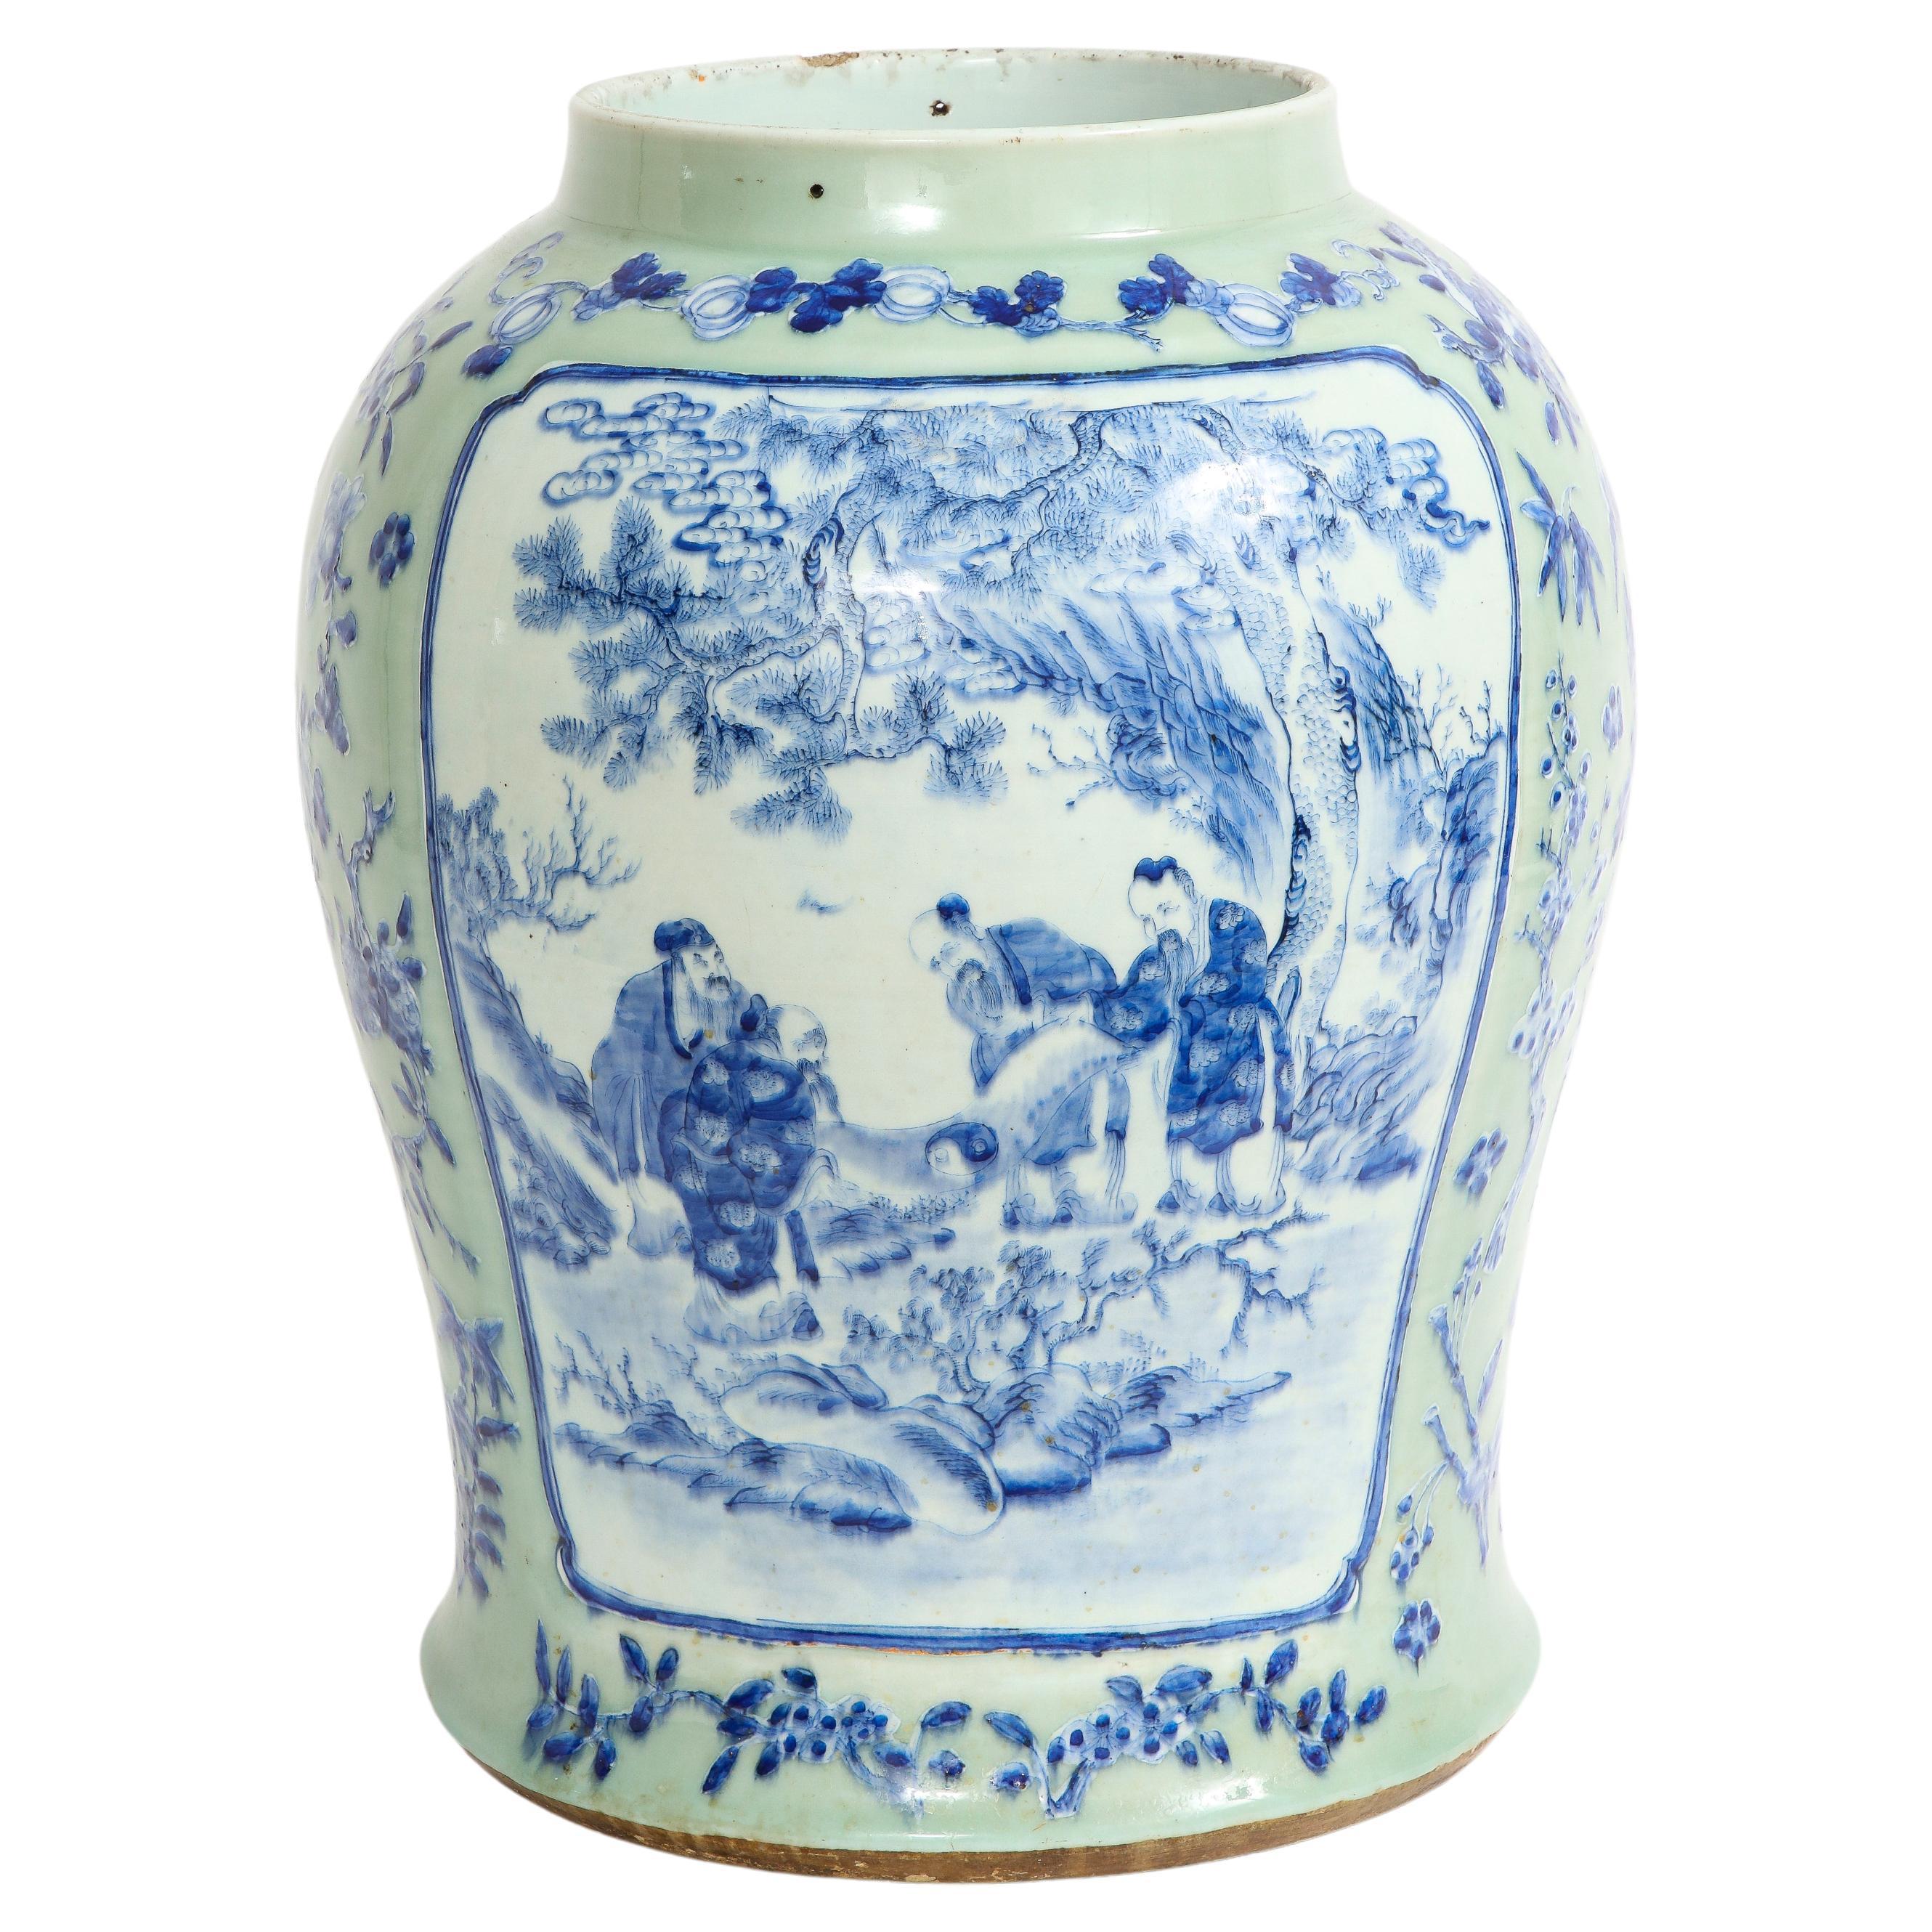 Chinesische Celadon-Grundvase des 19. Jahrhunderts: Blaue und weiße Kartuschen von Gelehrten und Älteren